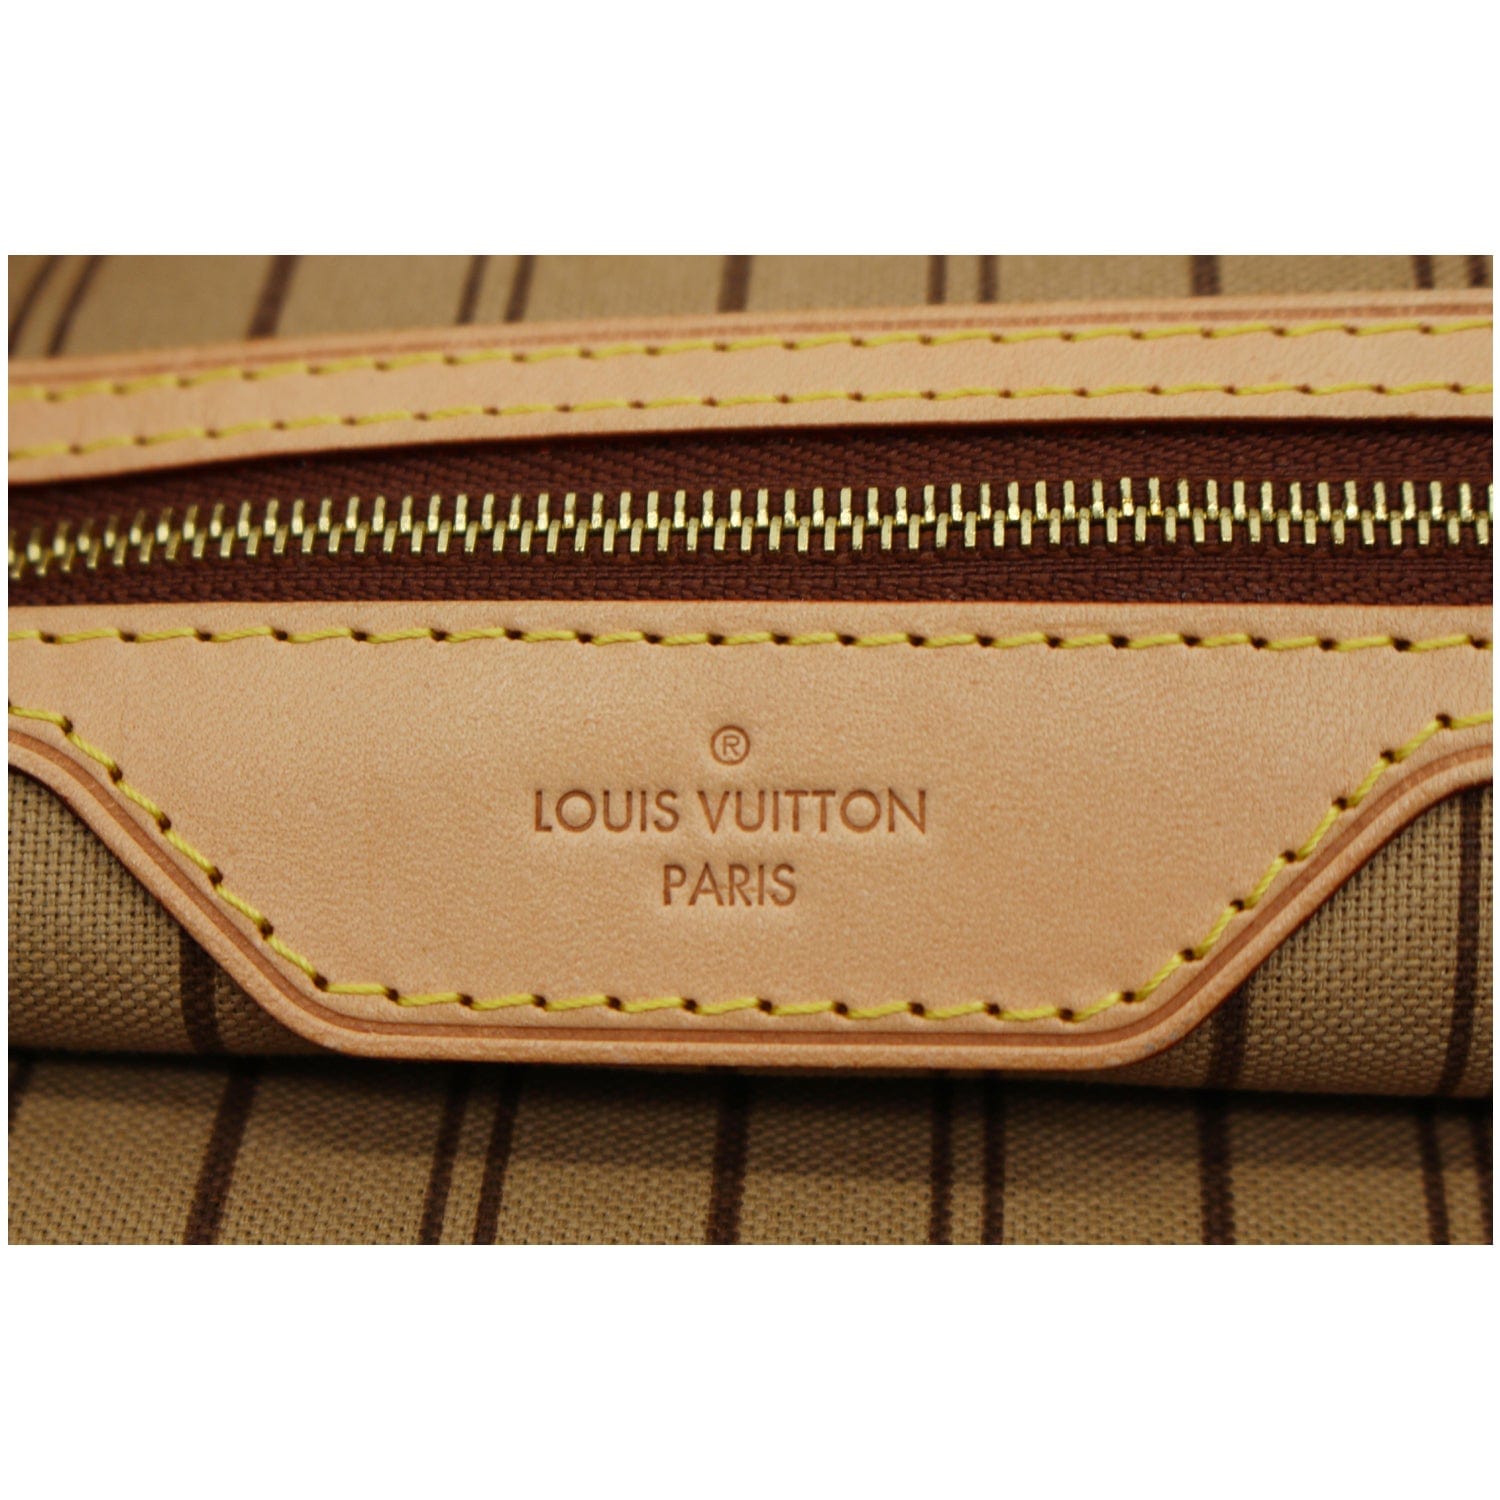 Auth Louis Vuitton Delightful PM Monogram M40352 Corner Leather